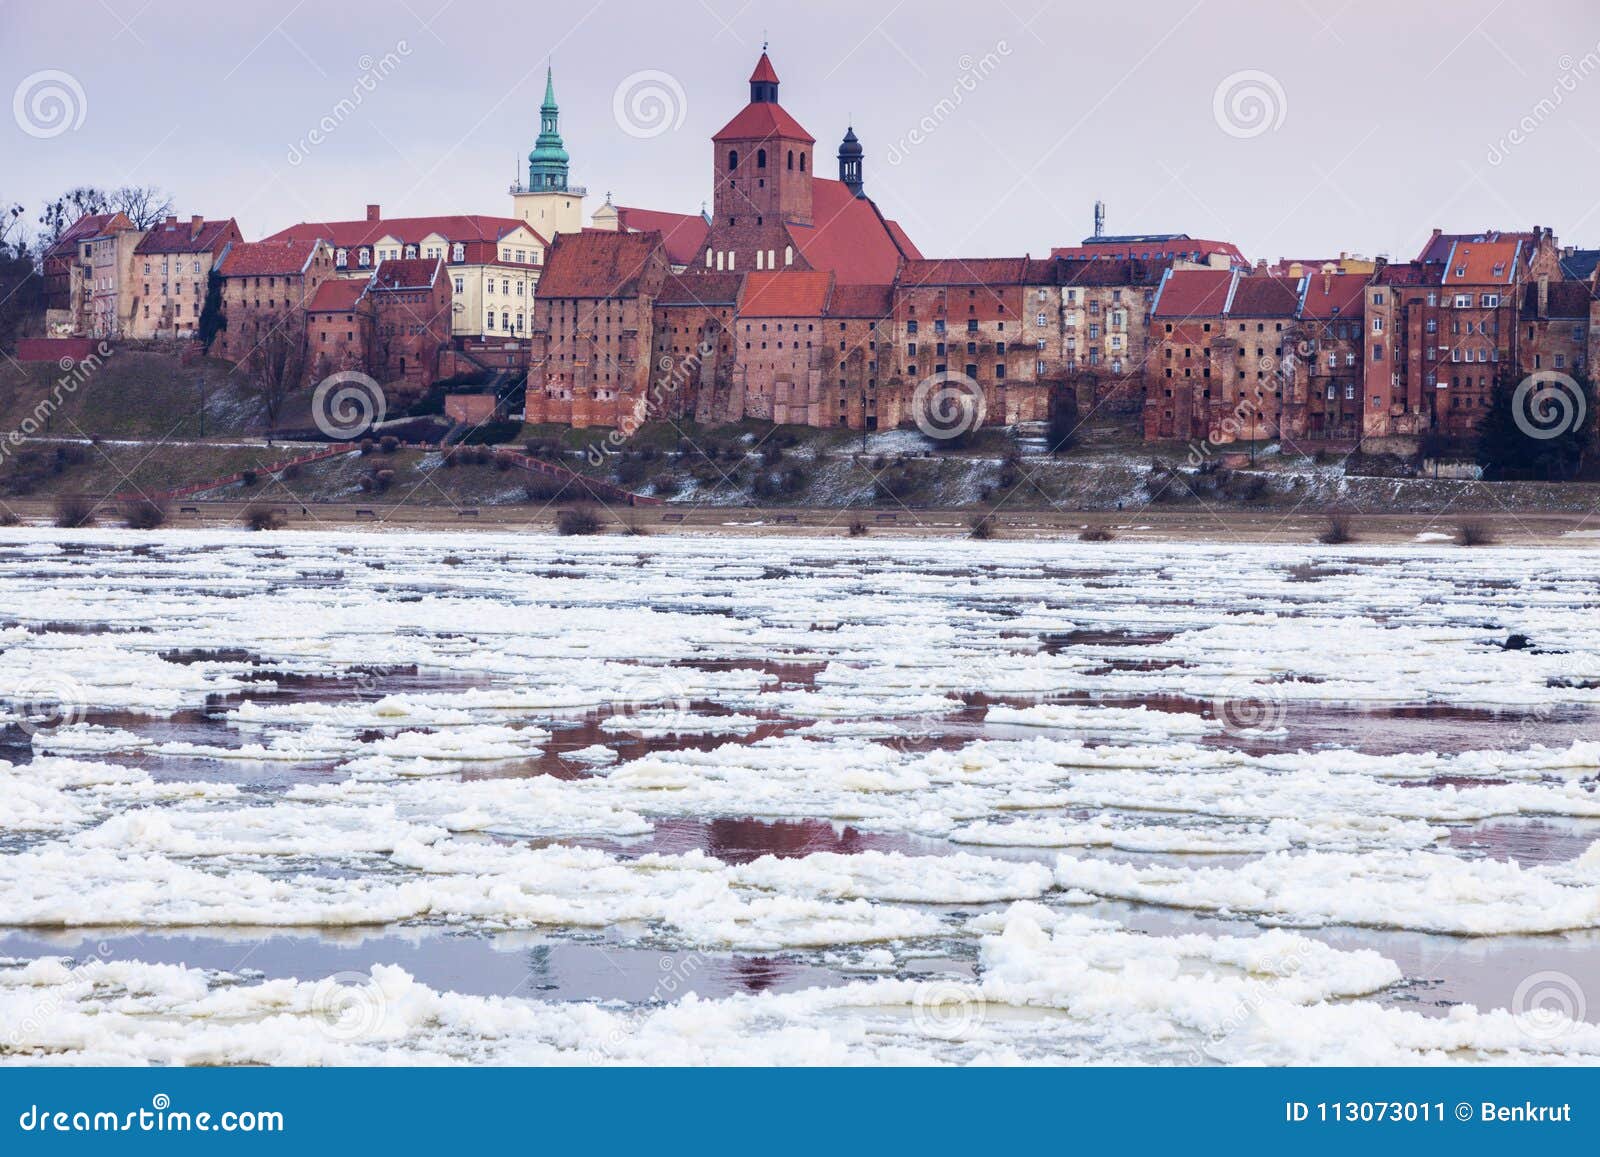 old town of grudziadz and frozen vistula river